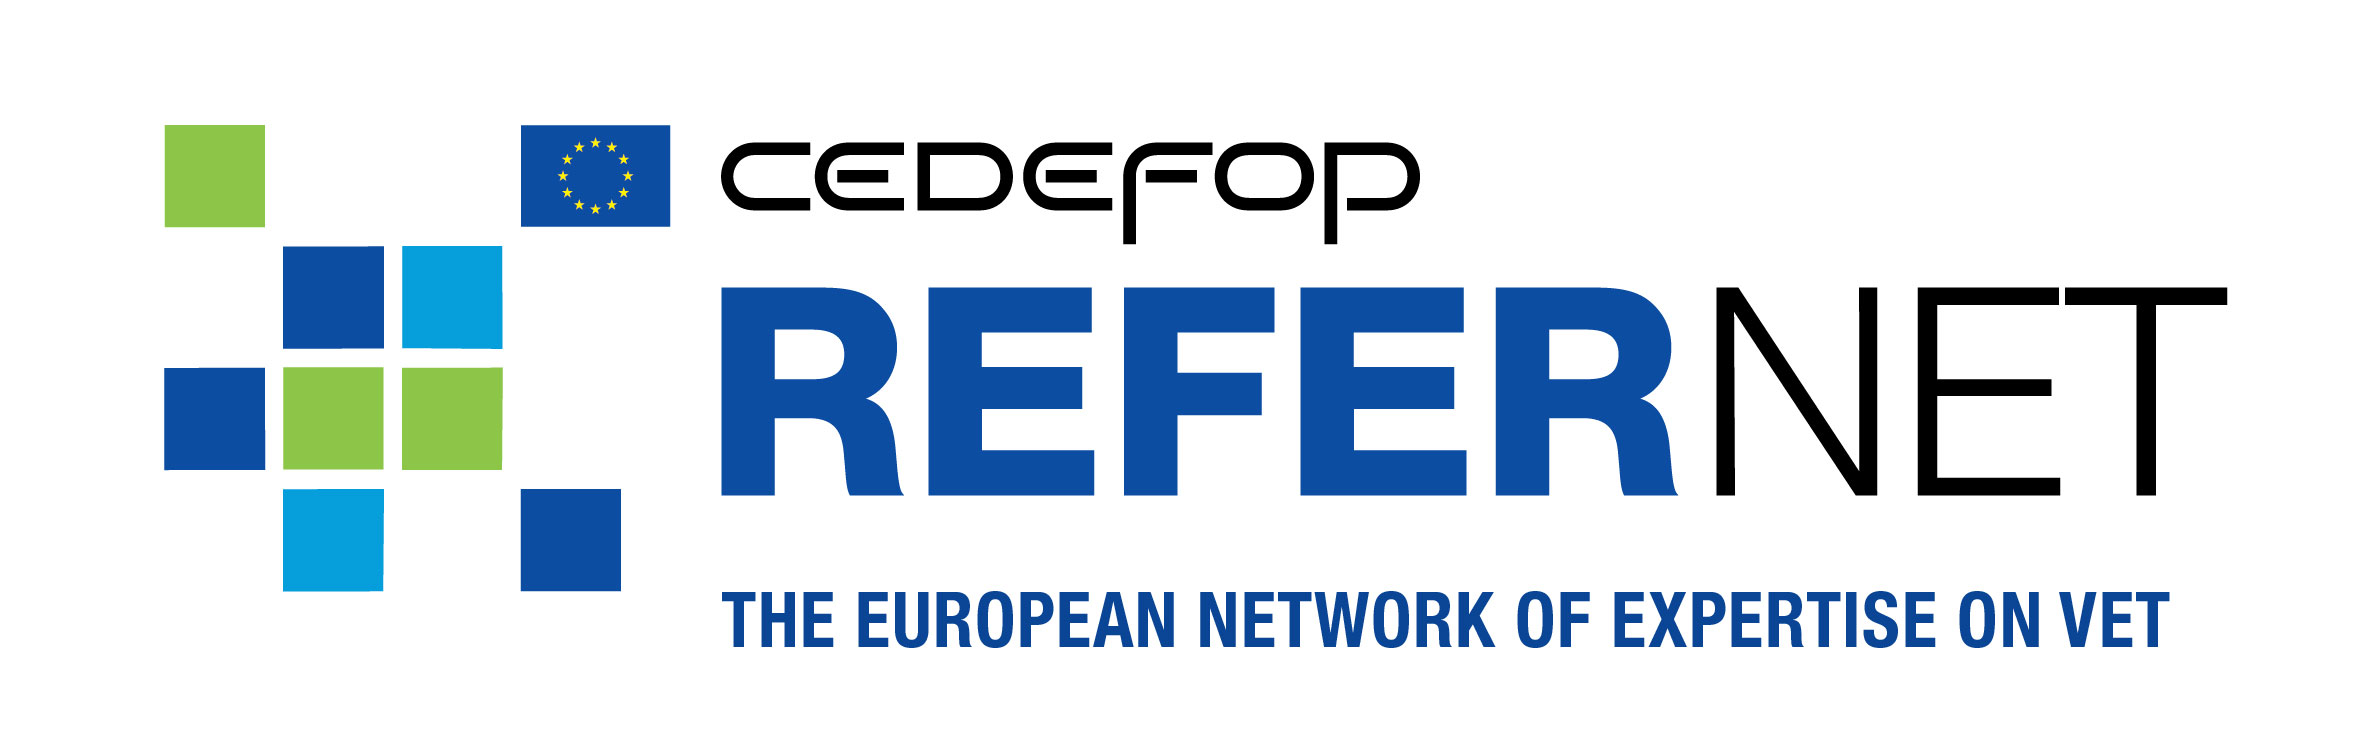 2017 refernet logo the european network of expertise on vet